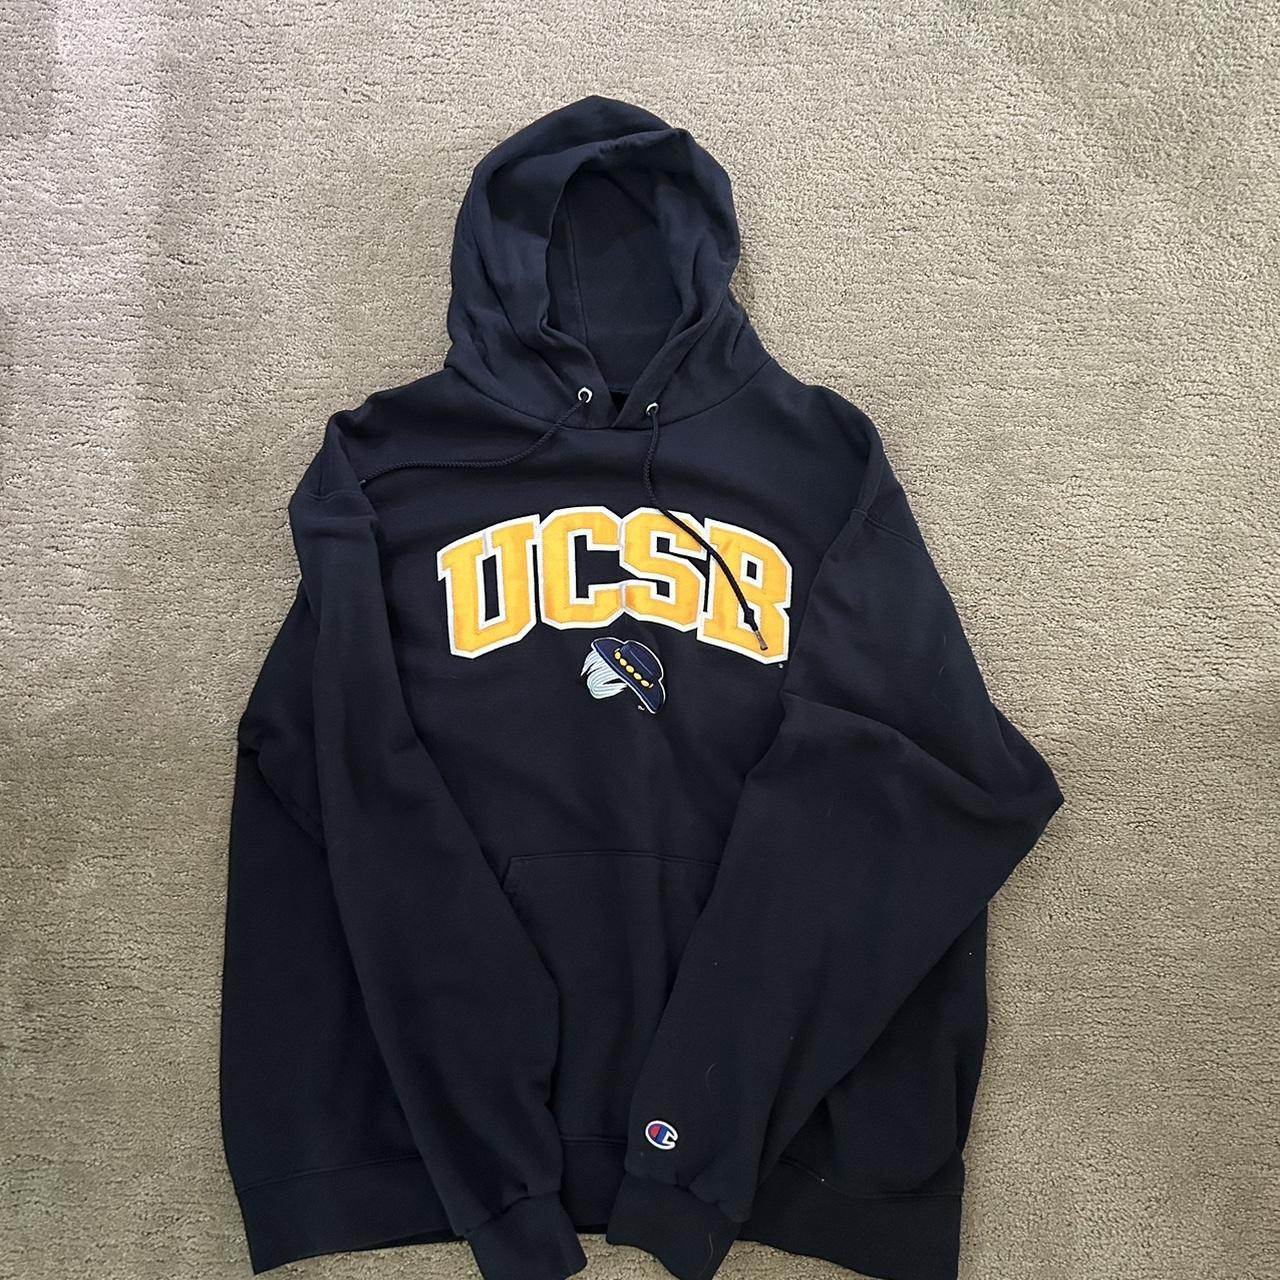 UCSB hoodie - Depop